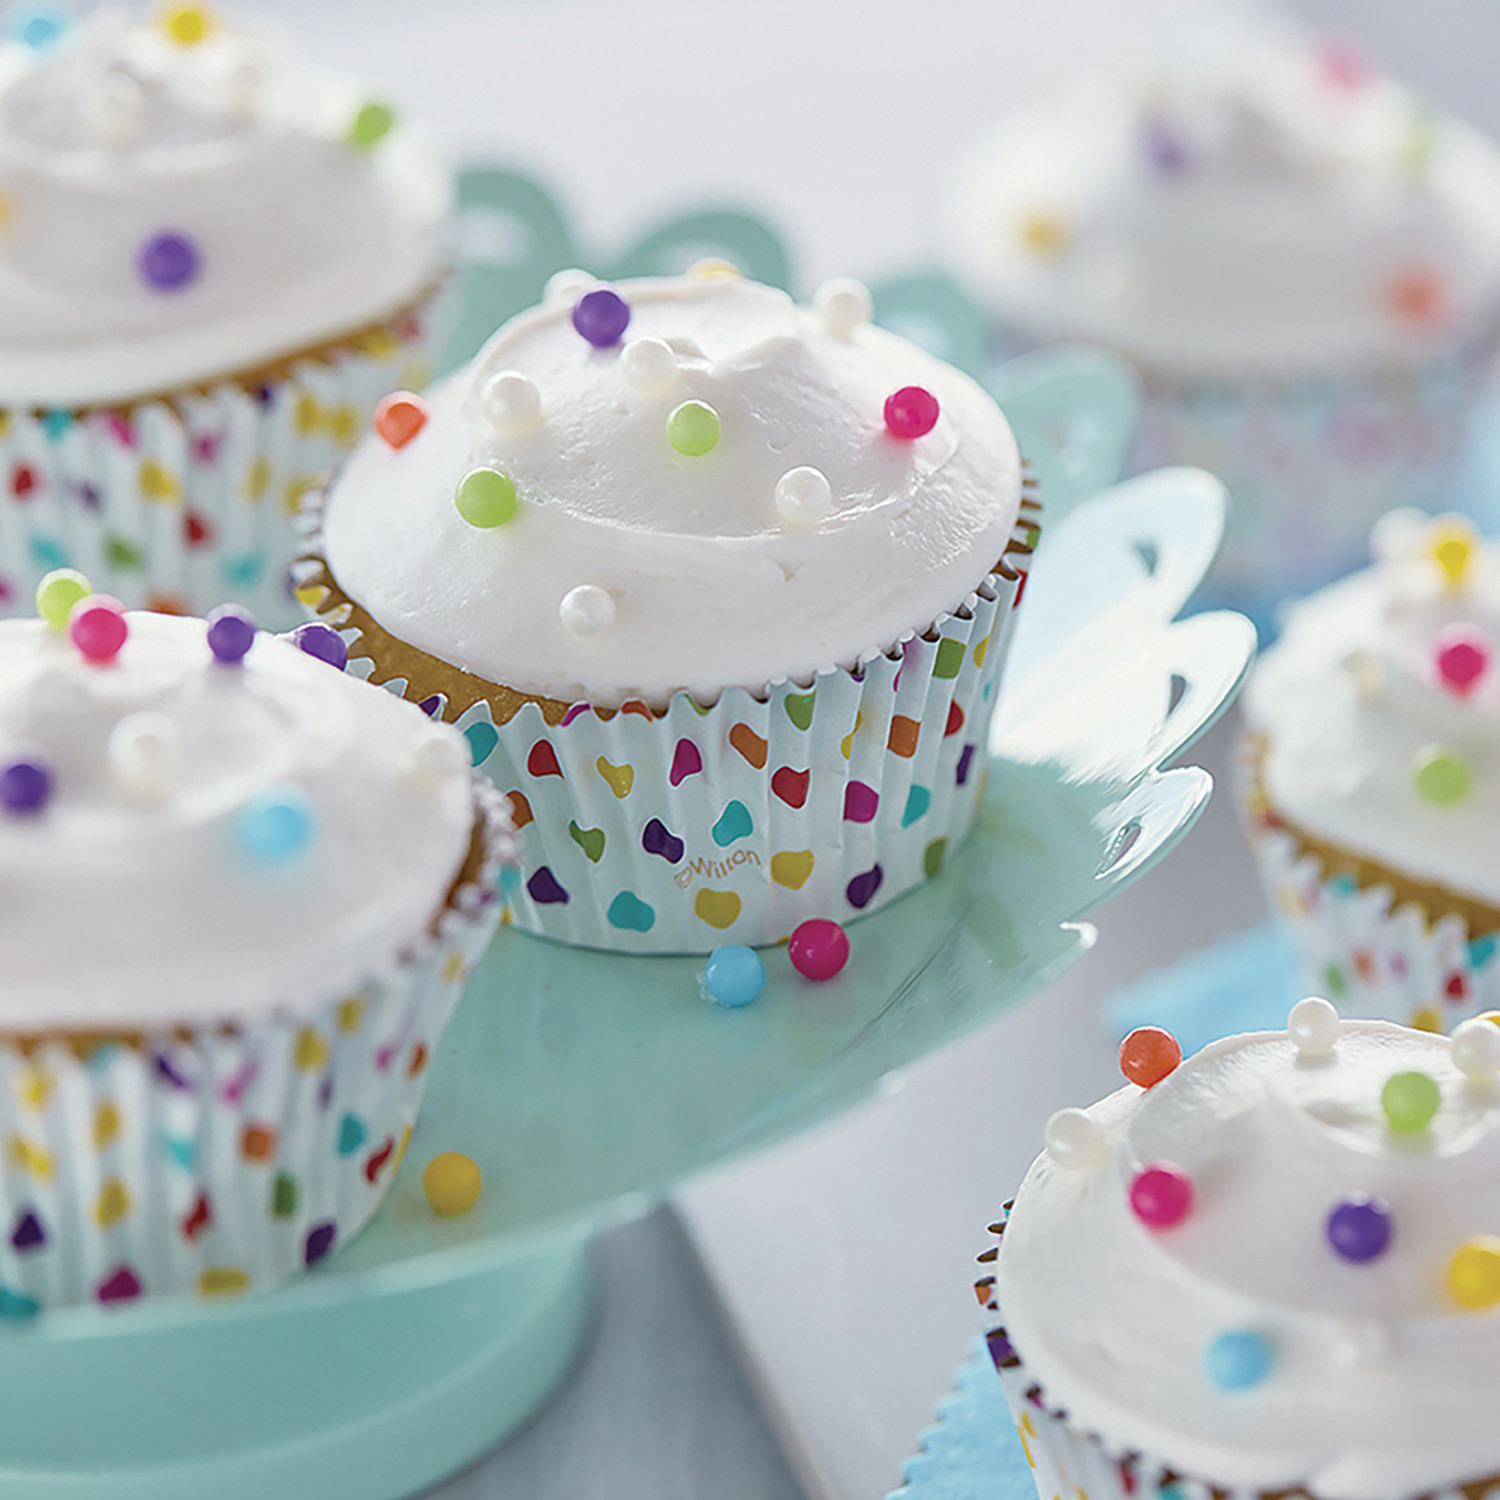 Wilton Recipe Right Nonstick Mini Cupcake and Muffin Pan 12-cup